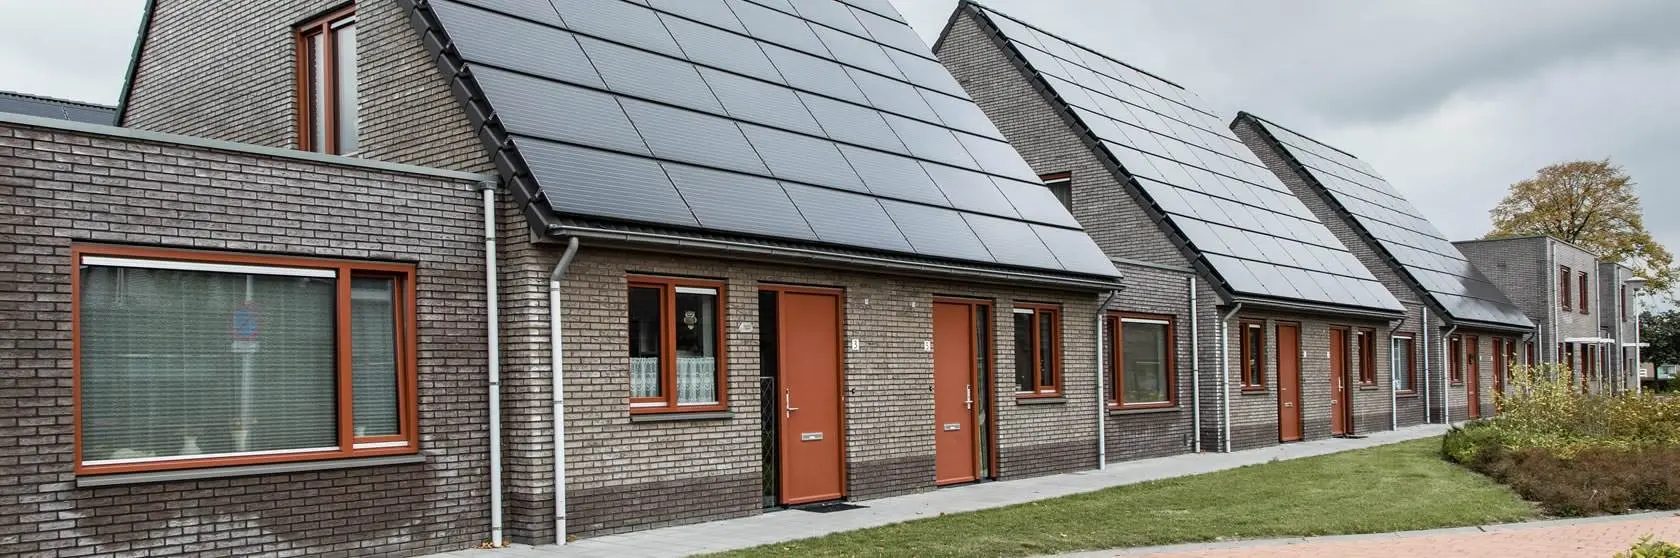 Duurzaamheidsconcepten van installatiebedrijf Mampaey actief in Bodegraven en omgeving